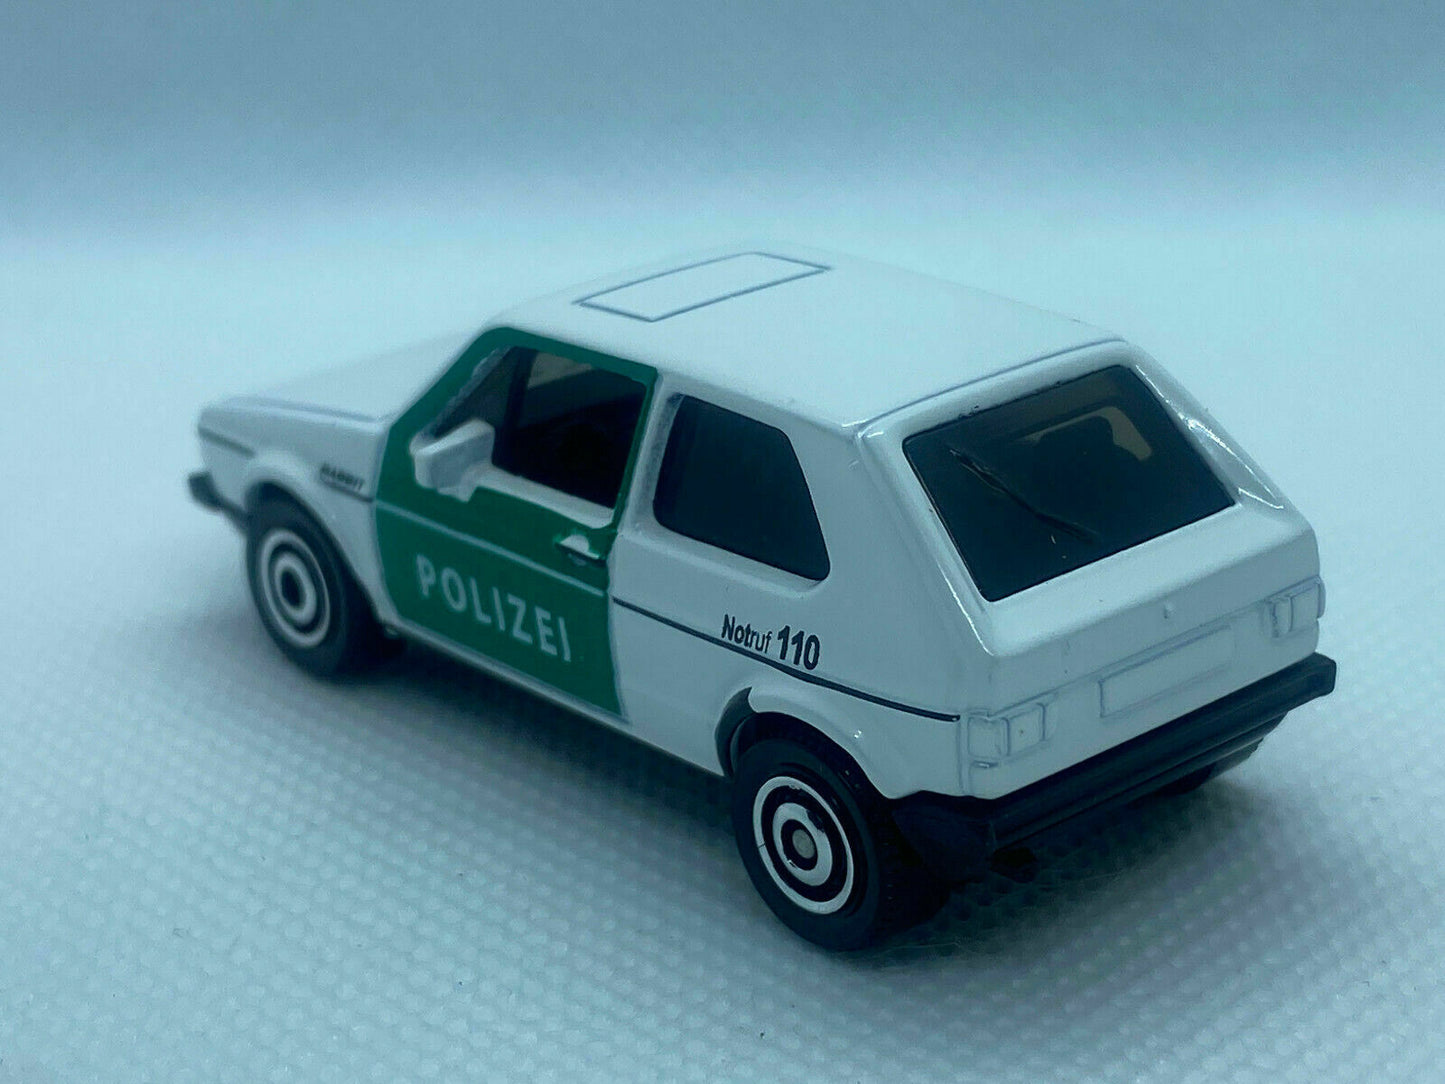 2021 Matchbox 1976 Volkswagen Golf MK1 #33/100 Polizei Police Car LOOSE